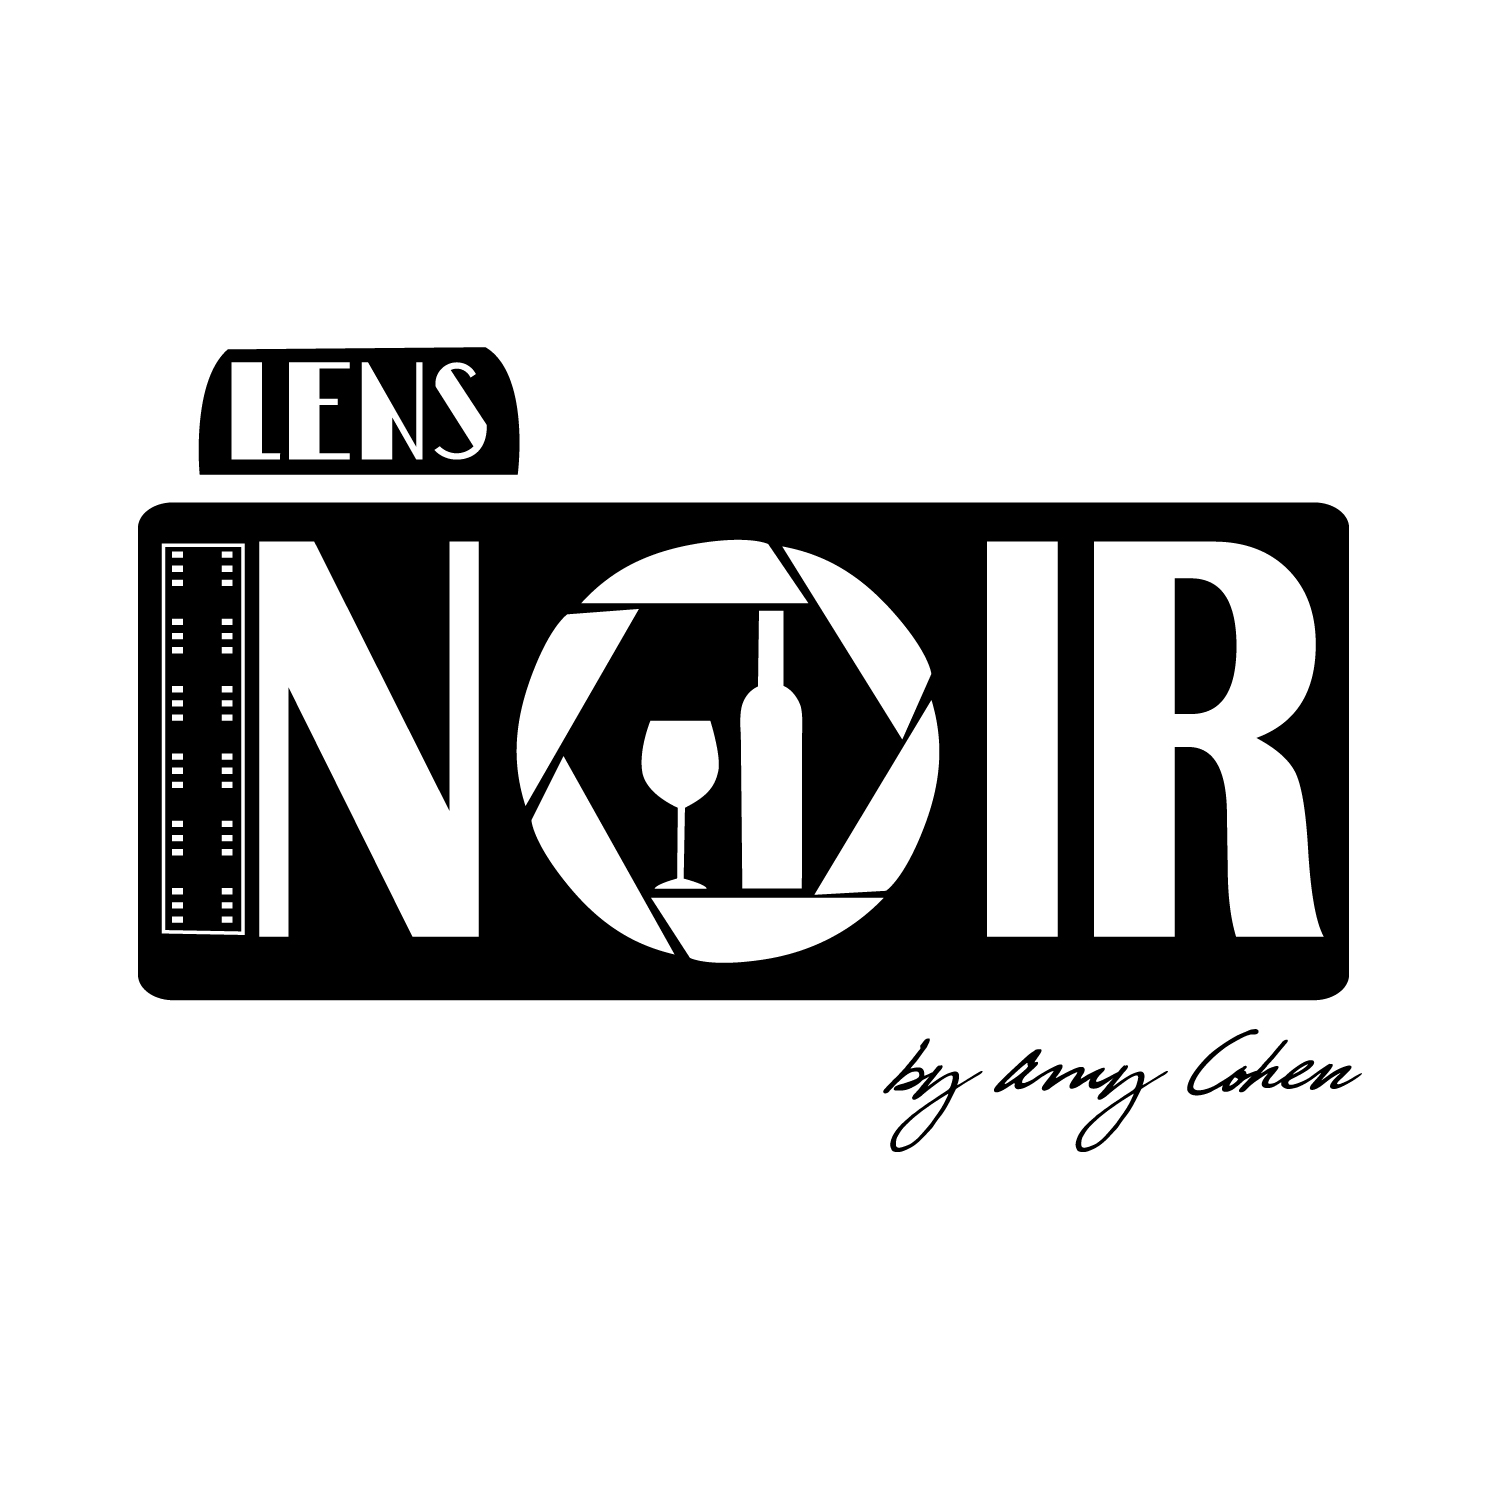 Lens Noir-01.jpg